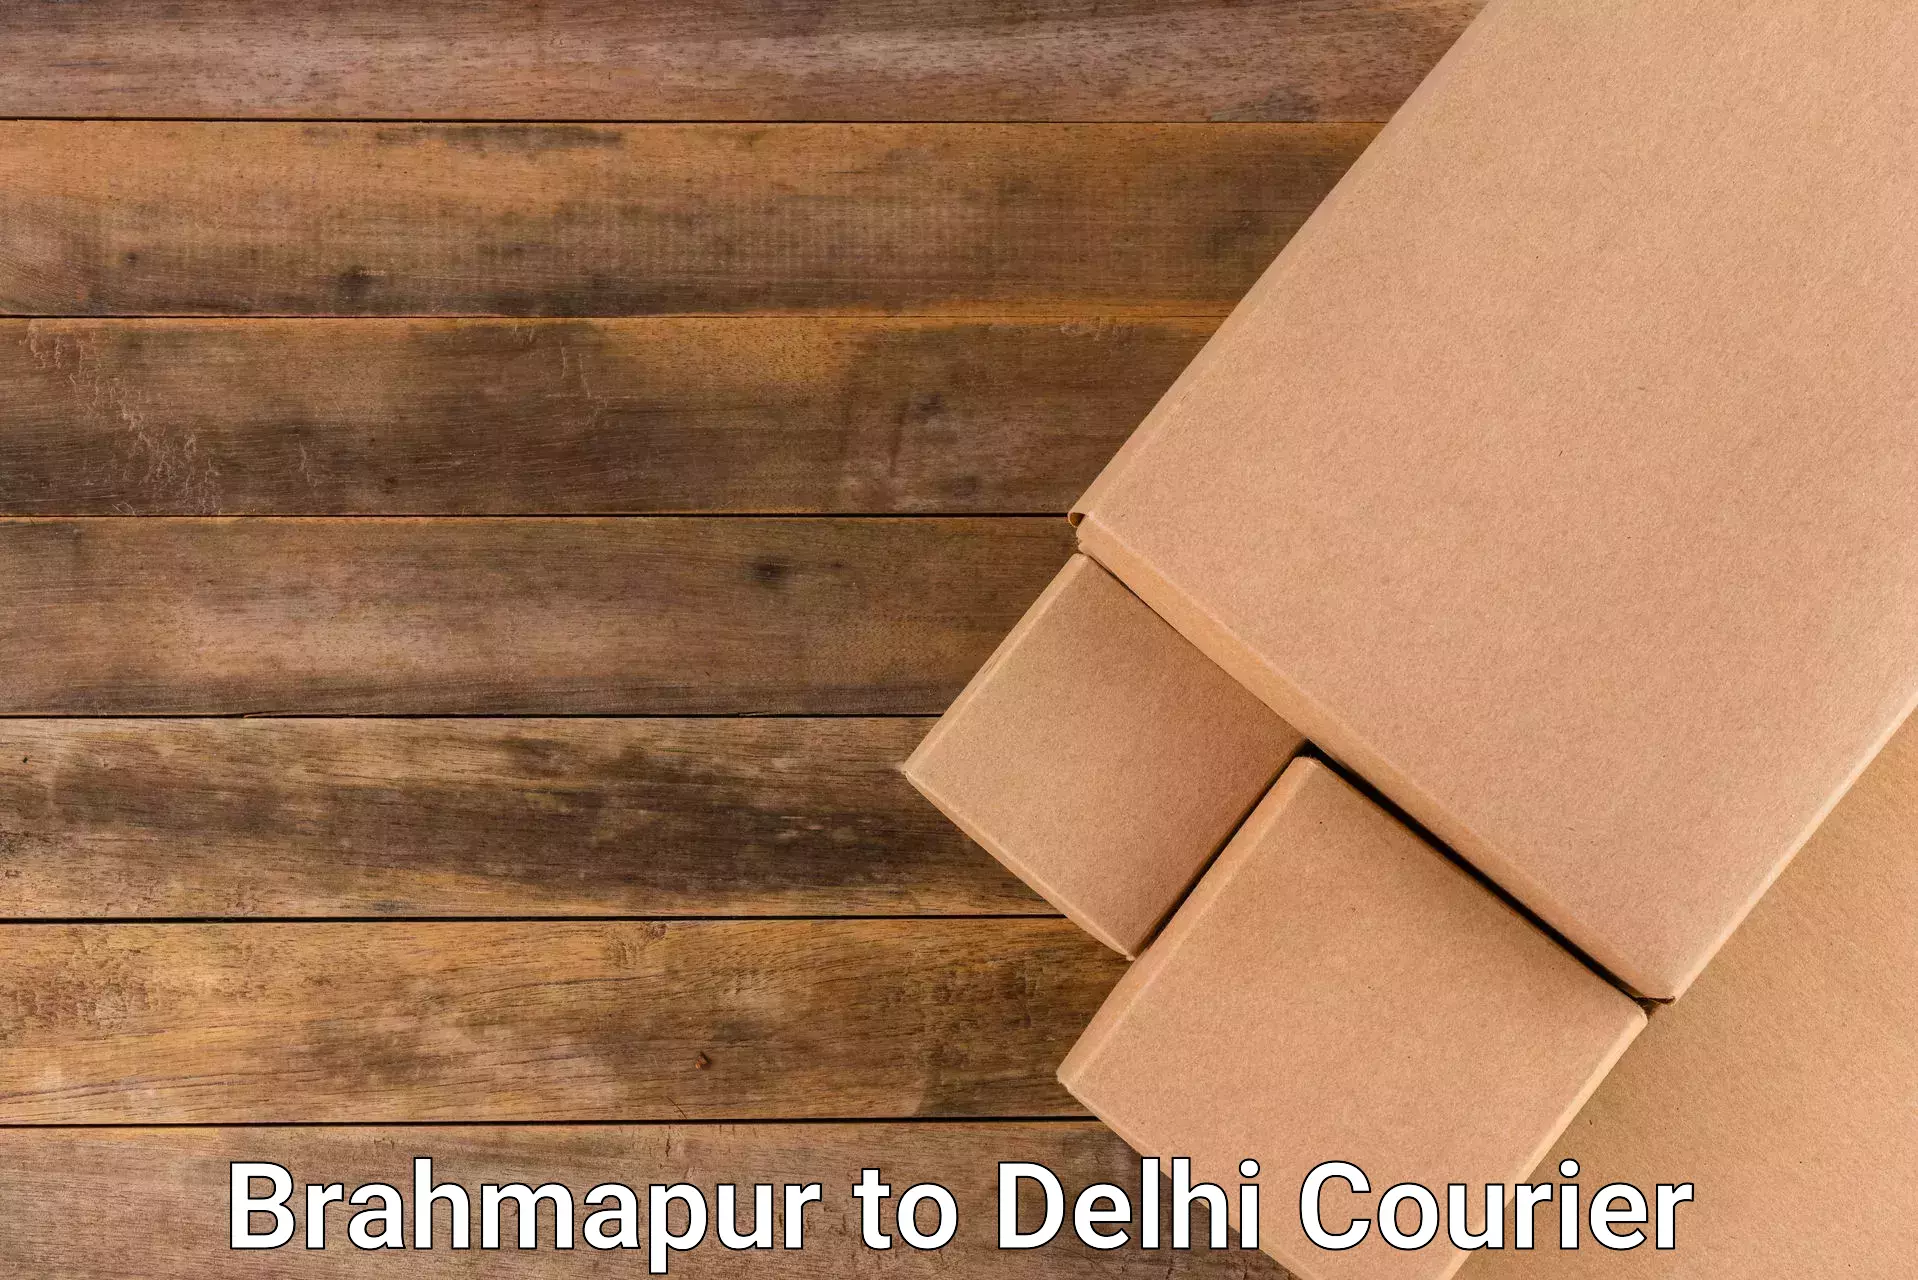 Ocean freight courier Brahmapur to Jawaharlal Nehru University New Delhi